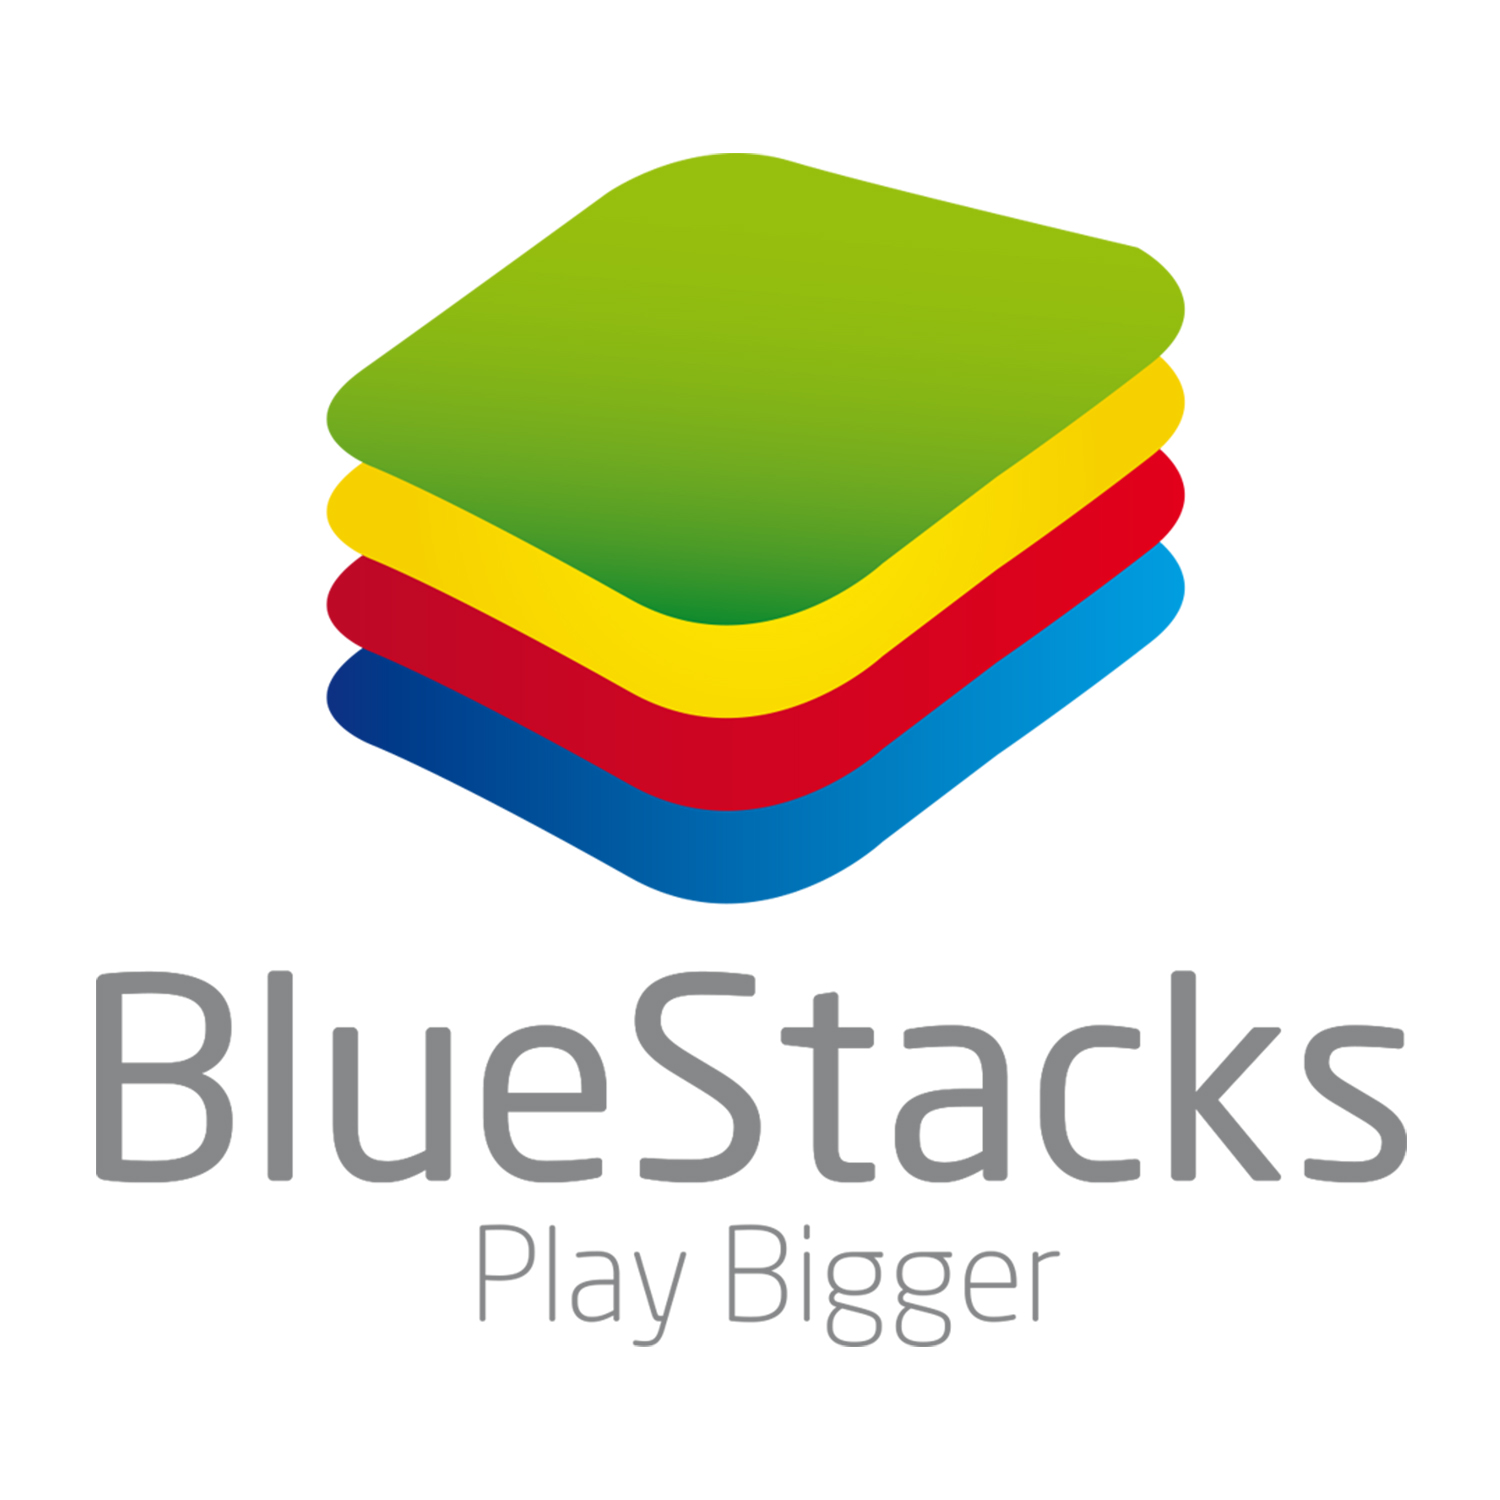 BlueStacks Logo Play Bigger